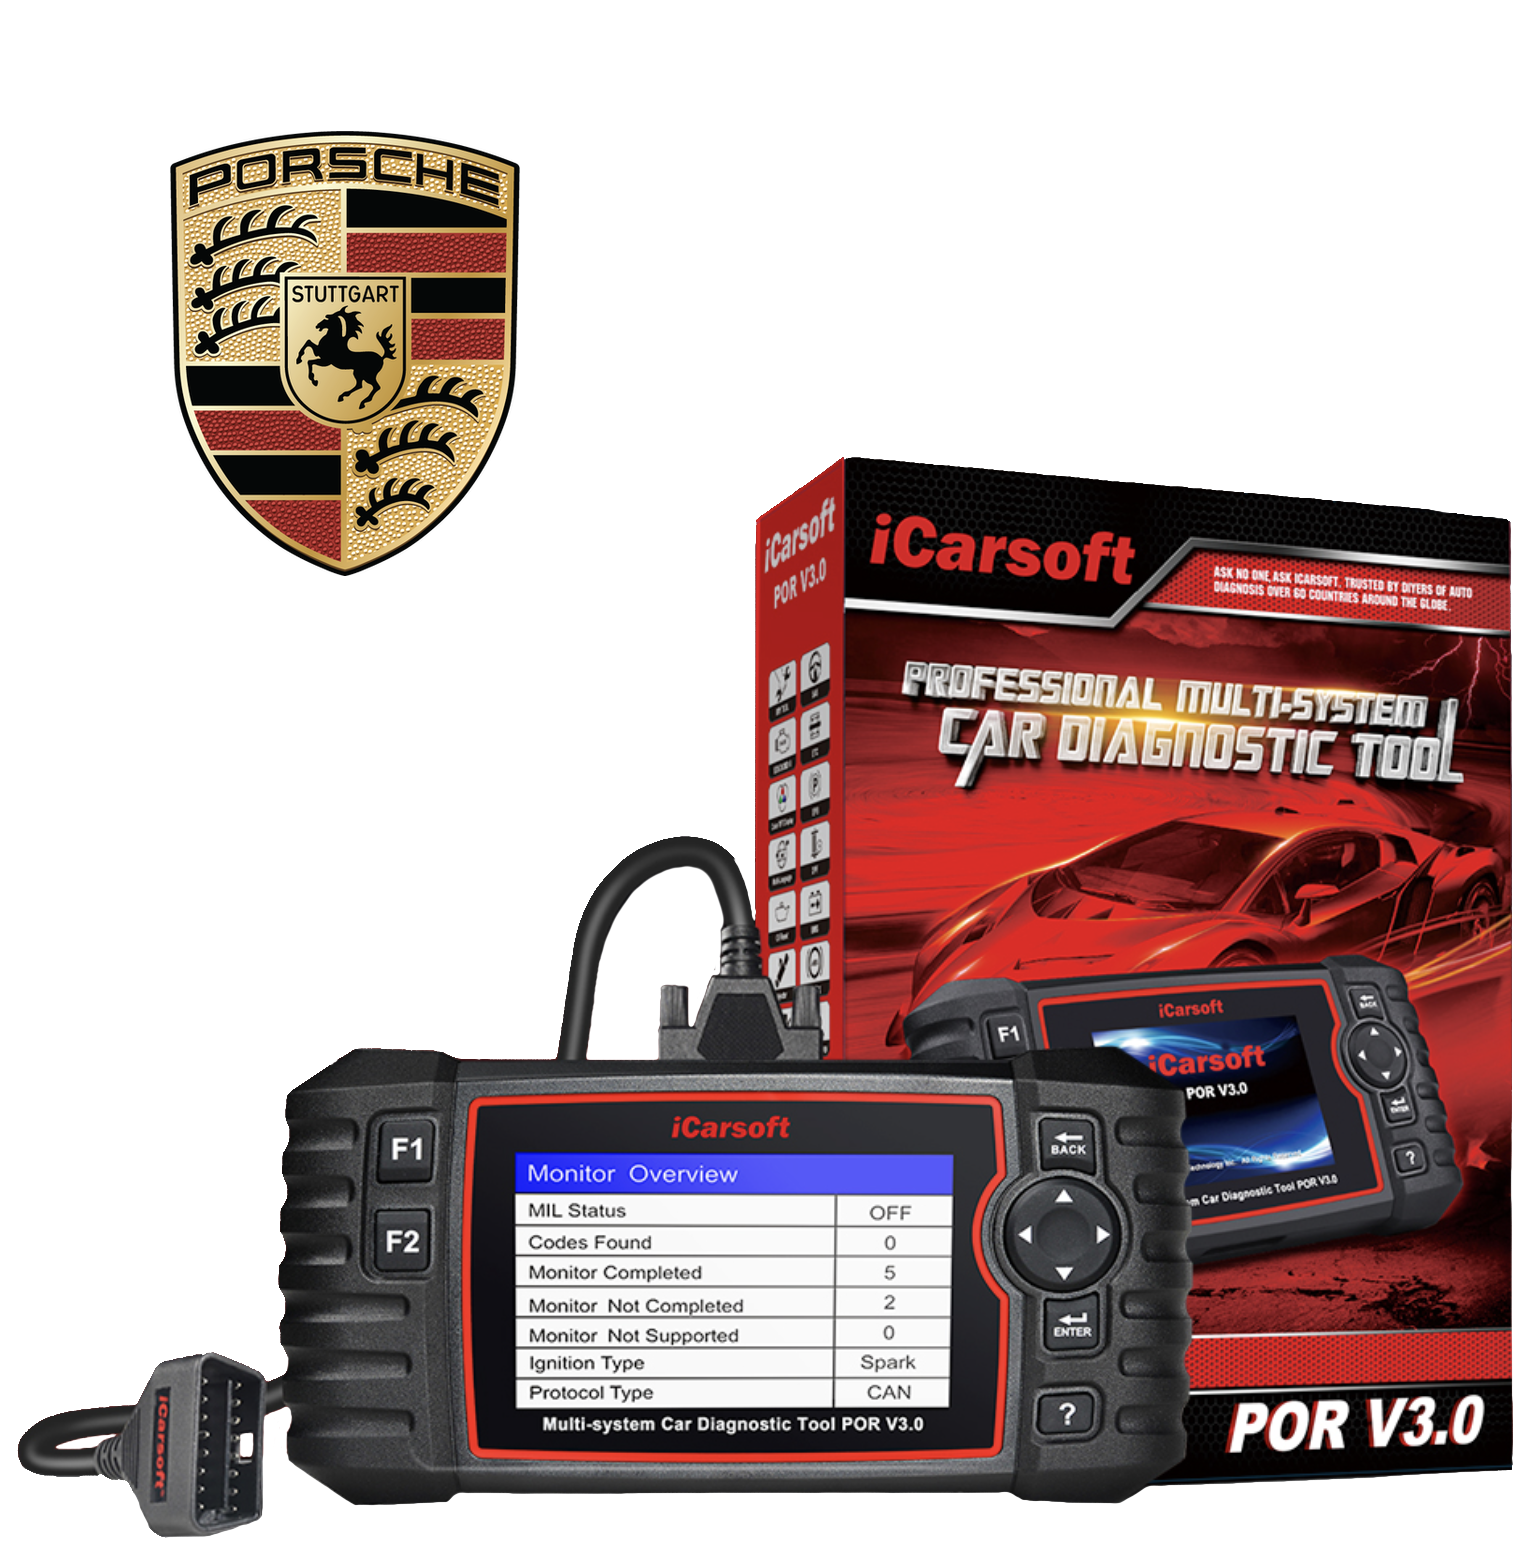 icarsoft-por-v3-scanner-diagnostic-professionnel-for-porsche-icarsoft-france-1